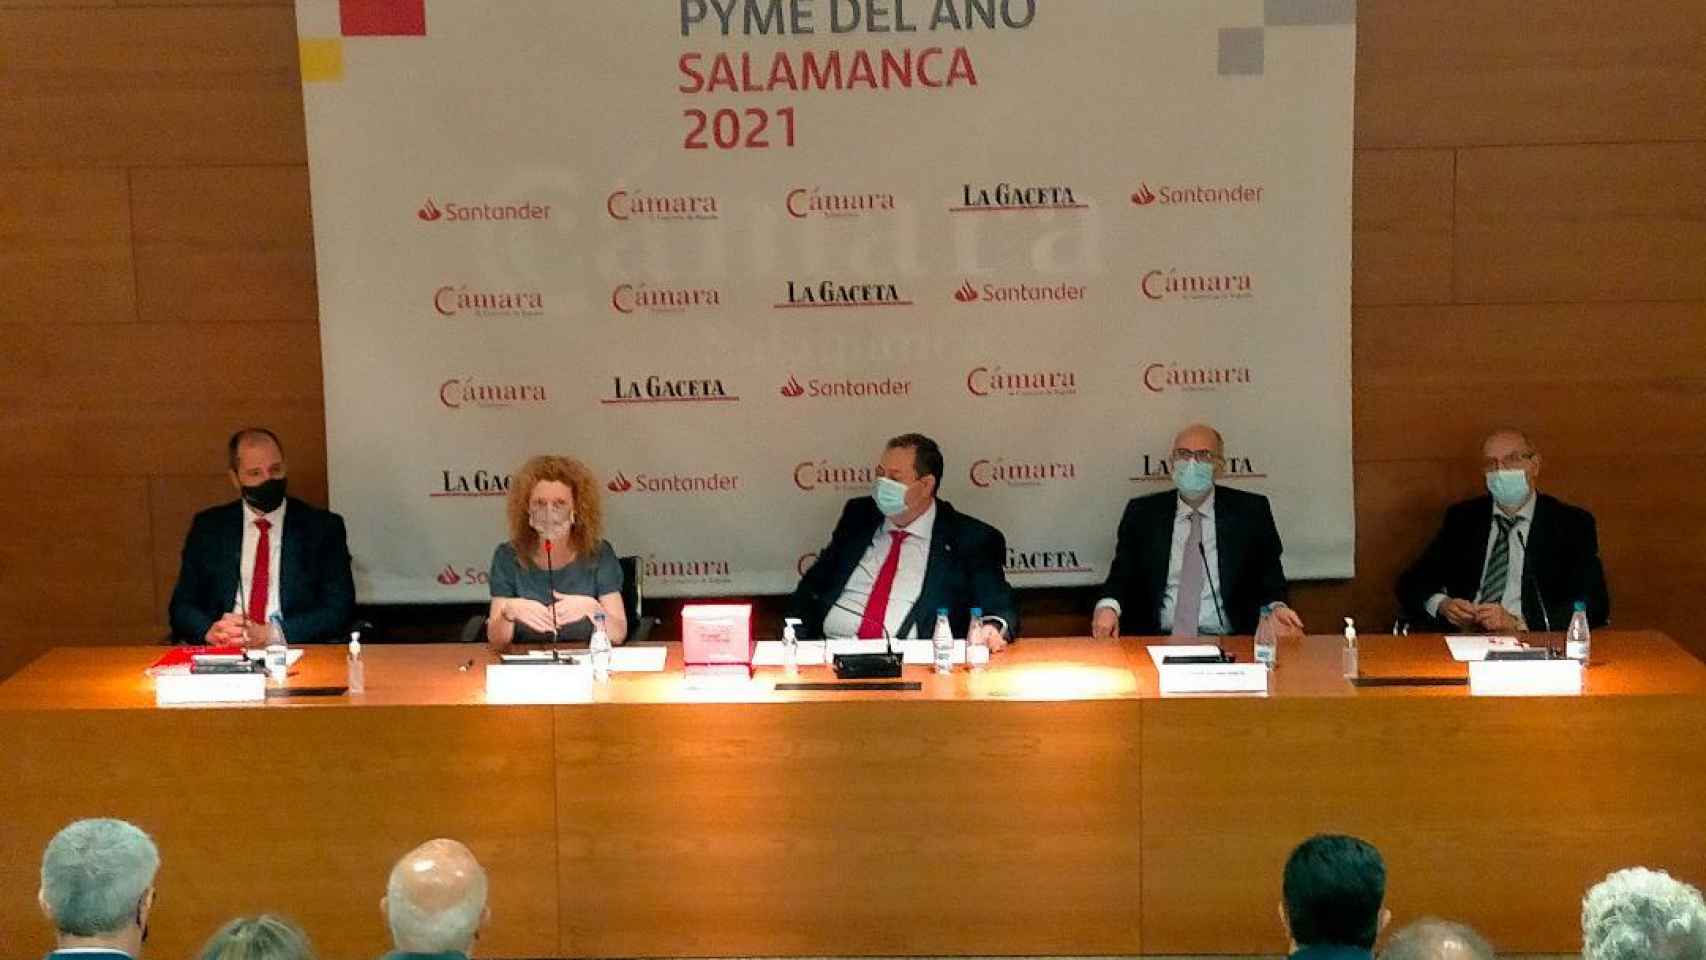 Mesa presidencial del acto celebrado en la Cámara de Comercio de Salamanca